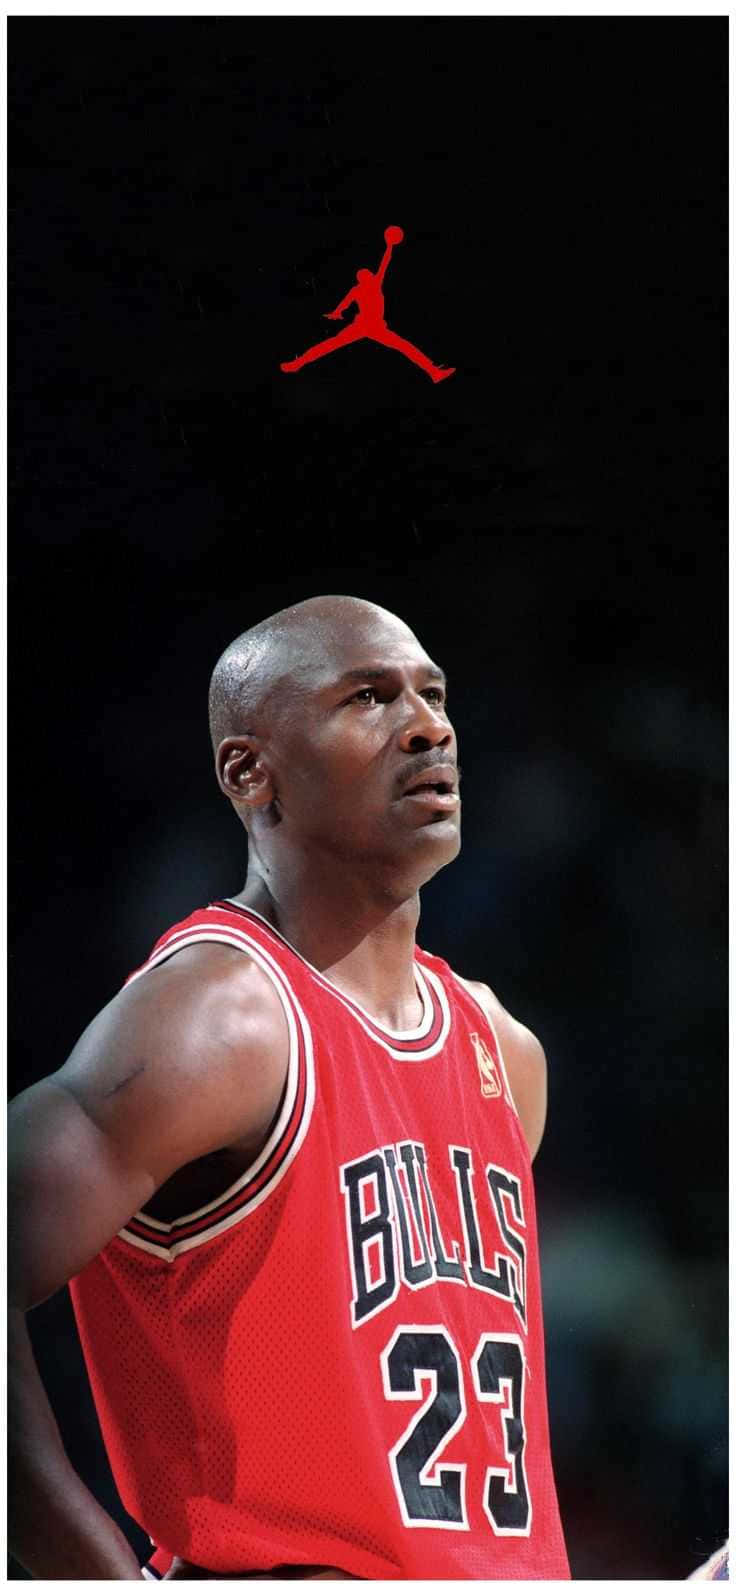 Kobe Bryant wearing MJ's jersey while smoking a cigar